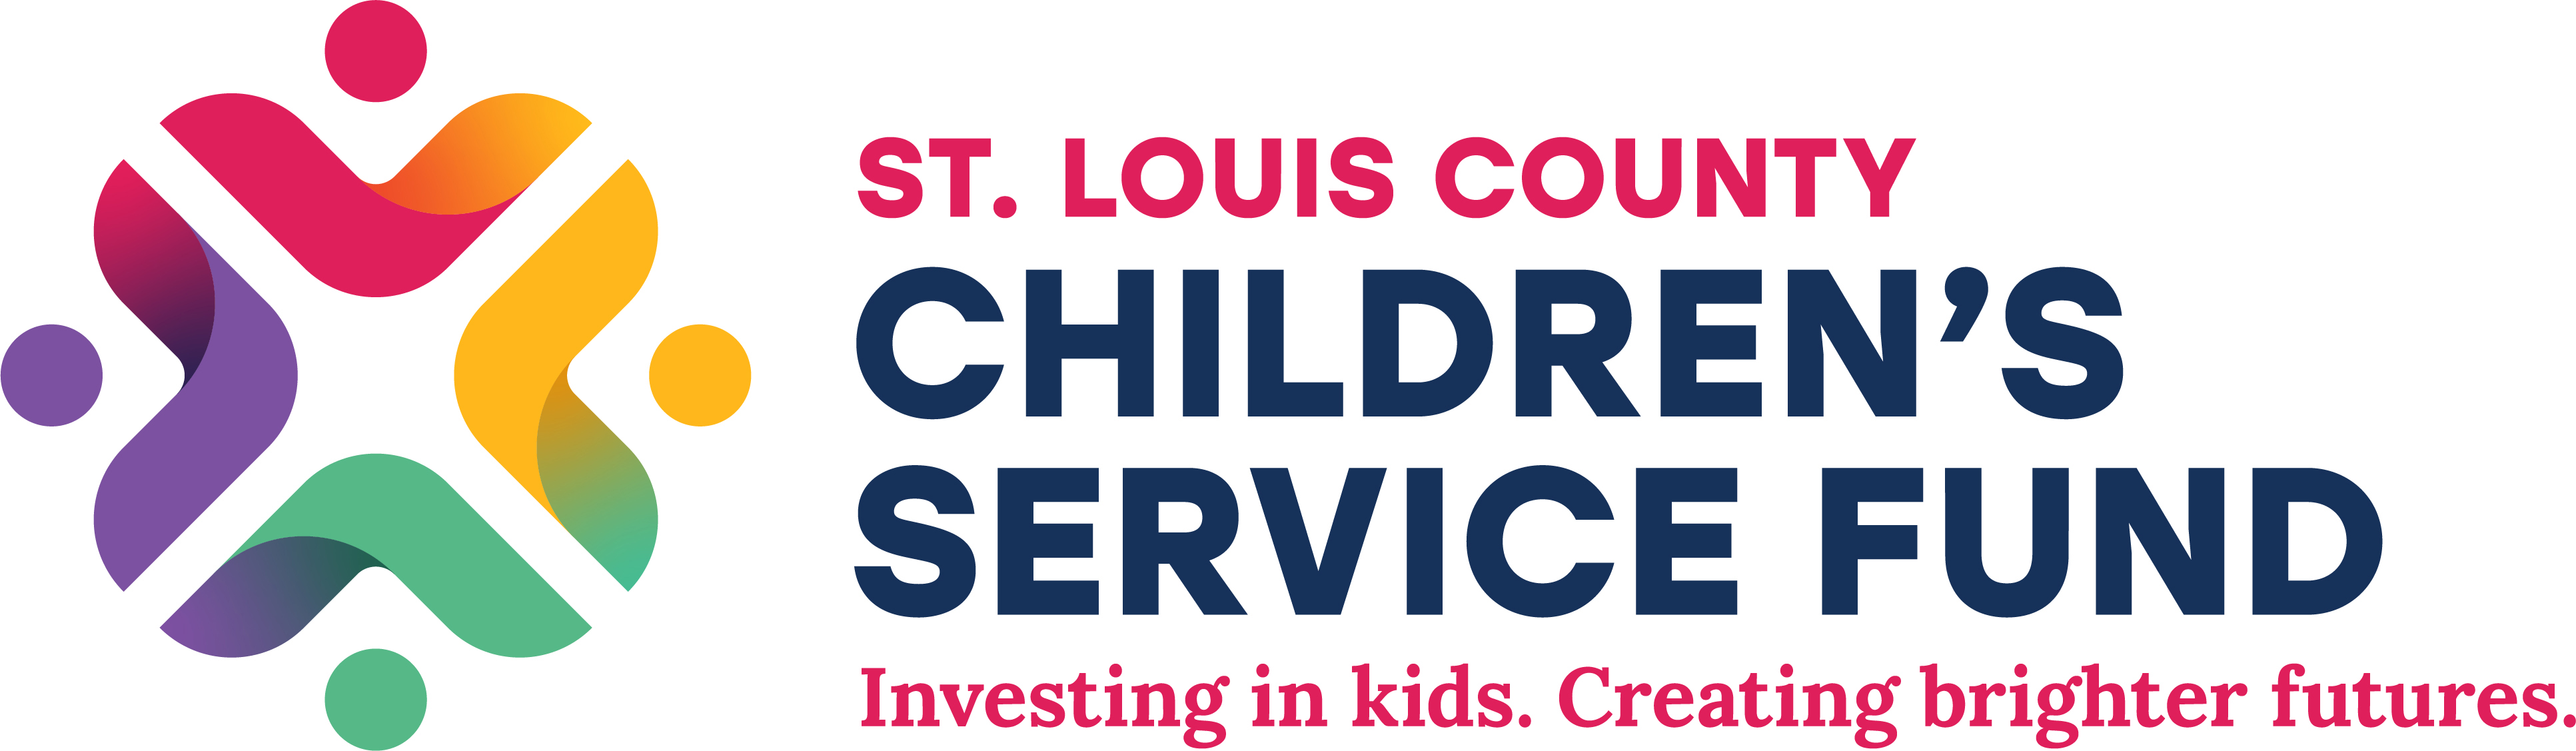 St. Louis County Children's Service Fund logo